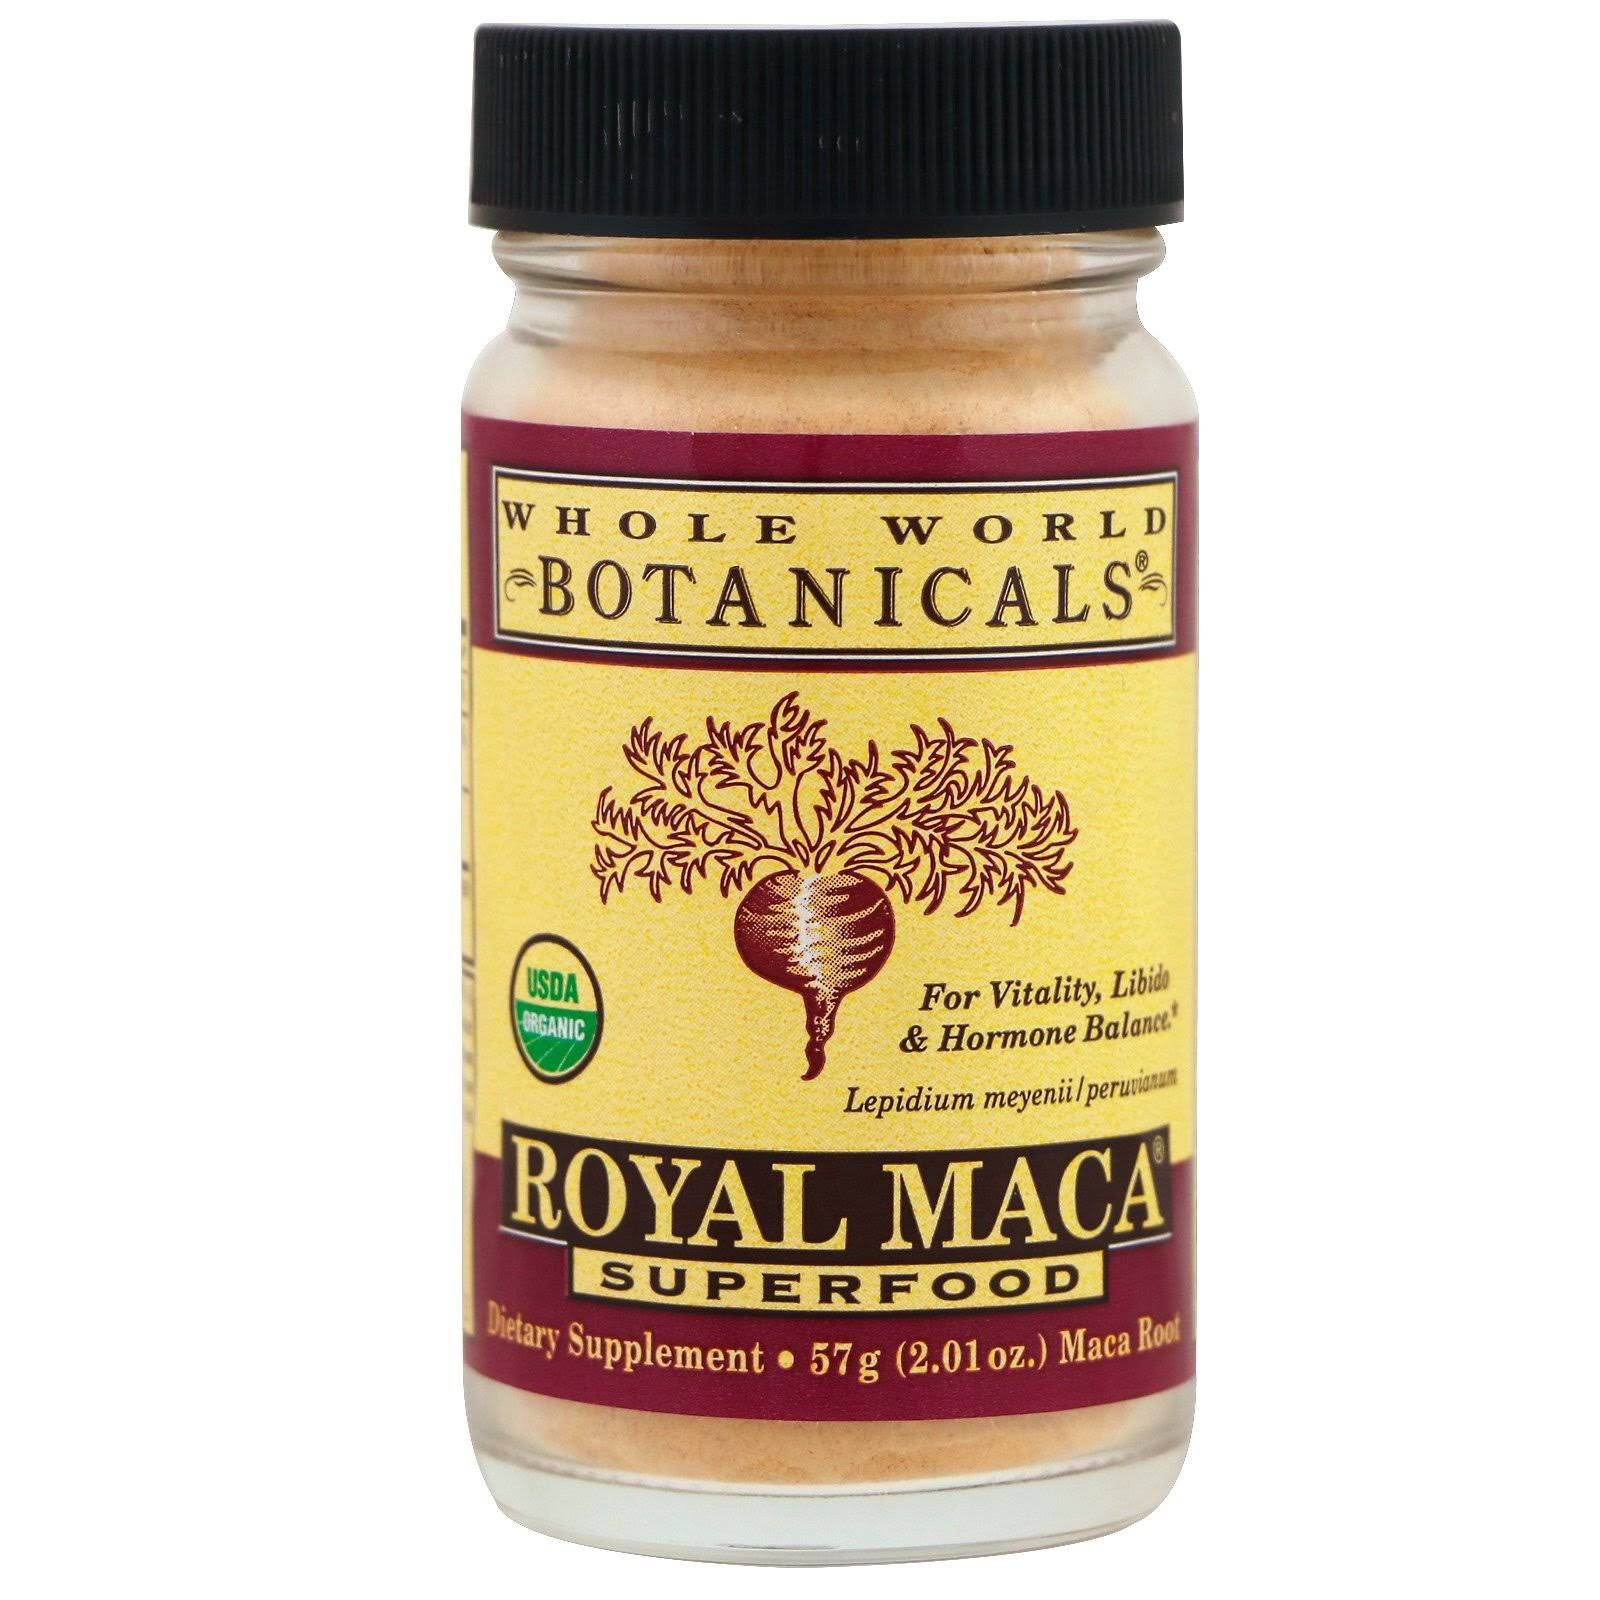 Whole World Botanicals Royal Maca Powder Superfood 2.01 oz.